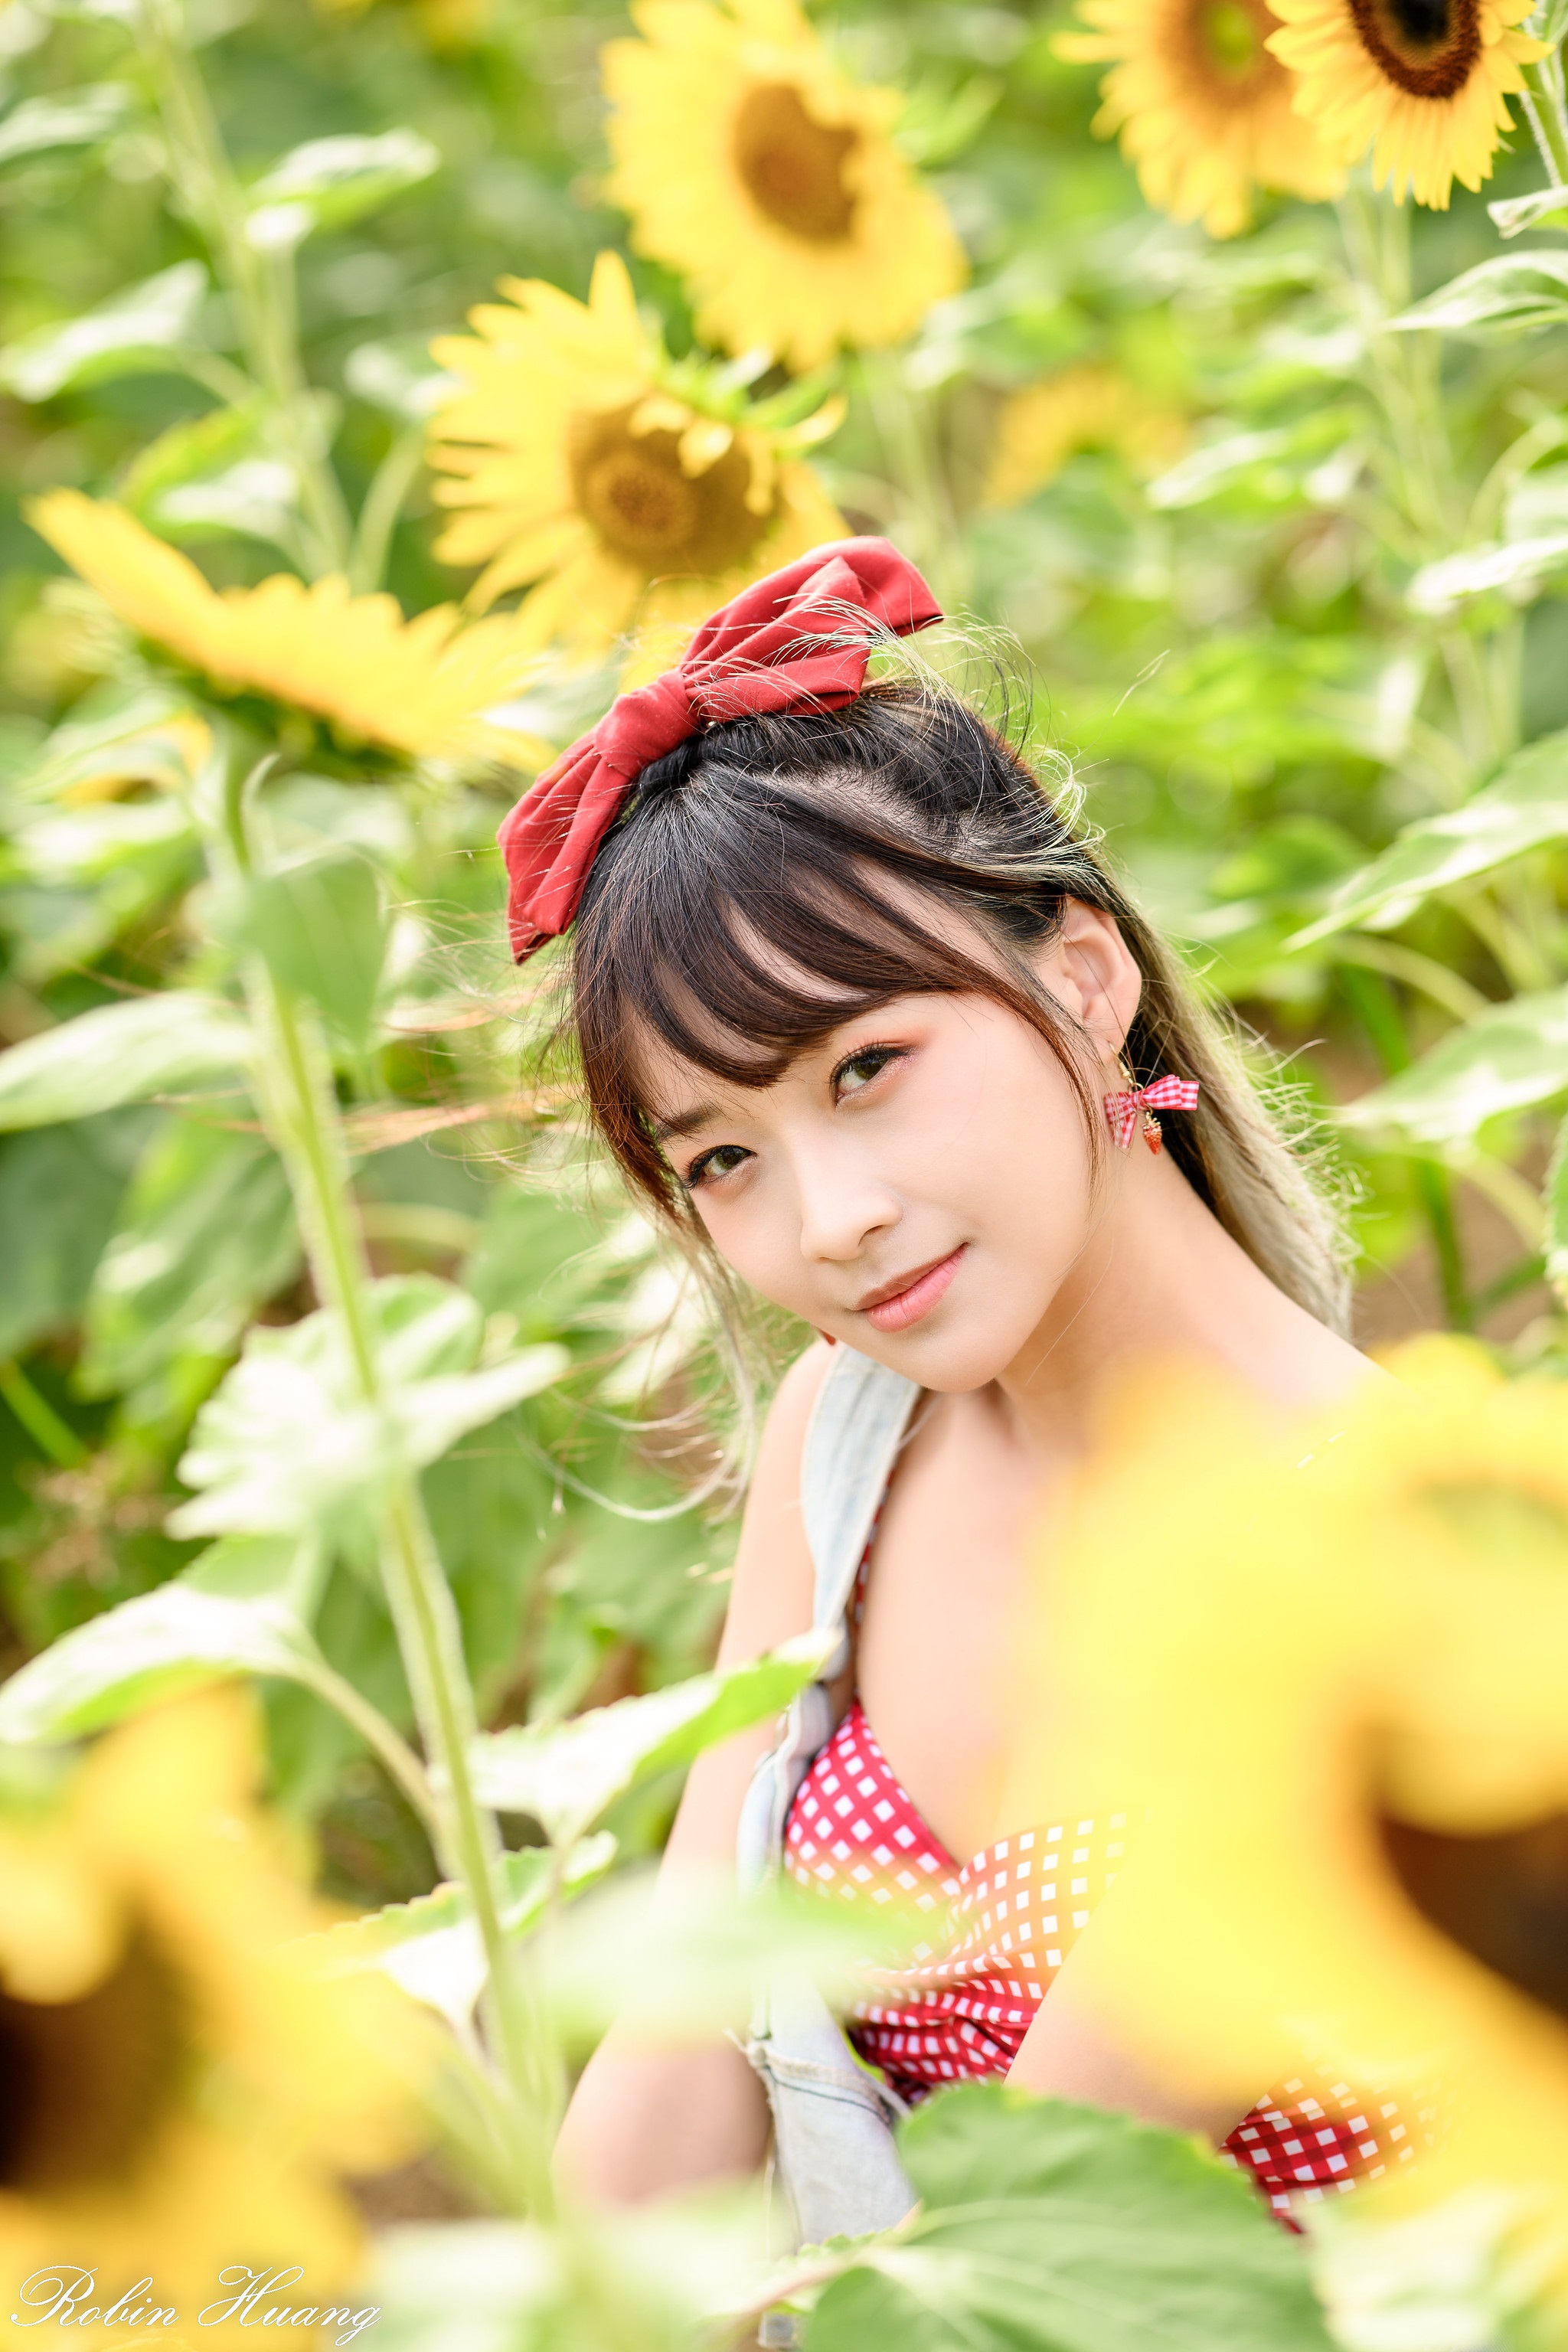 Robin Huang Women Asian Brunette Looking At Viewer Ribbon Sunflower Flowers Nature Field Portrait De 2048x3072